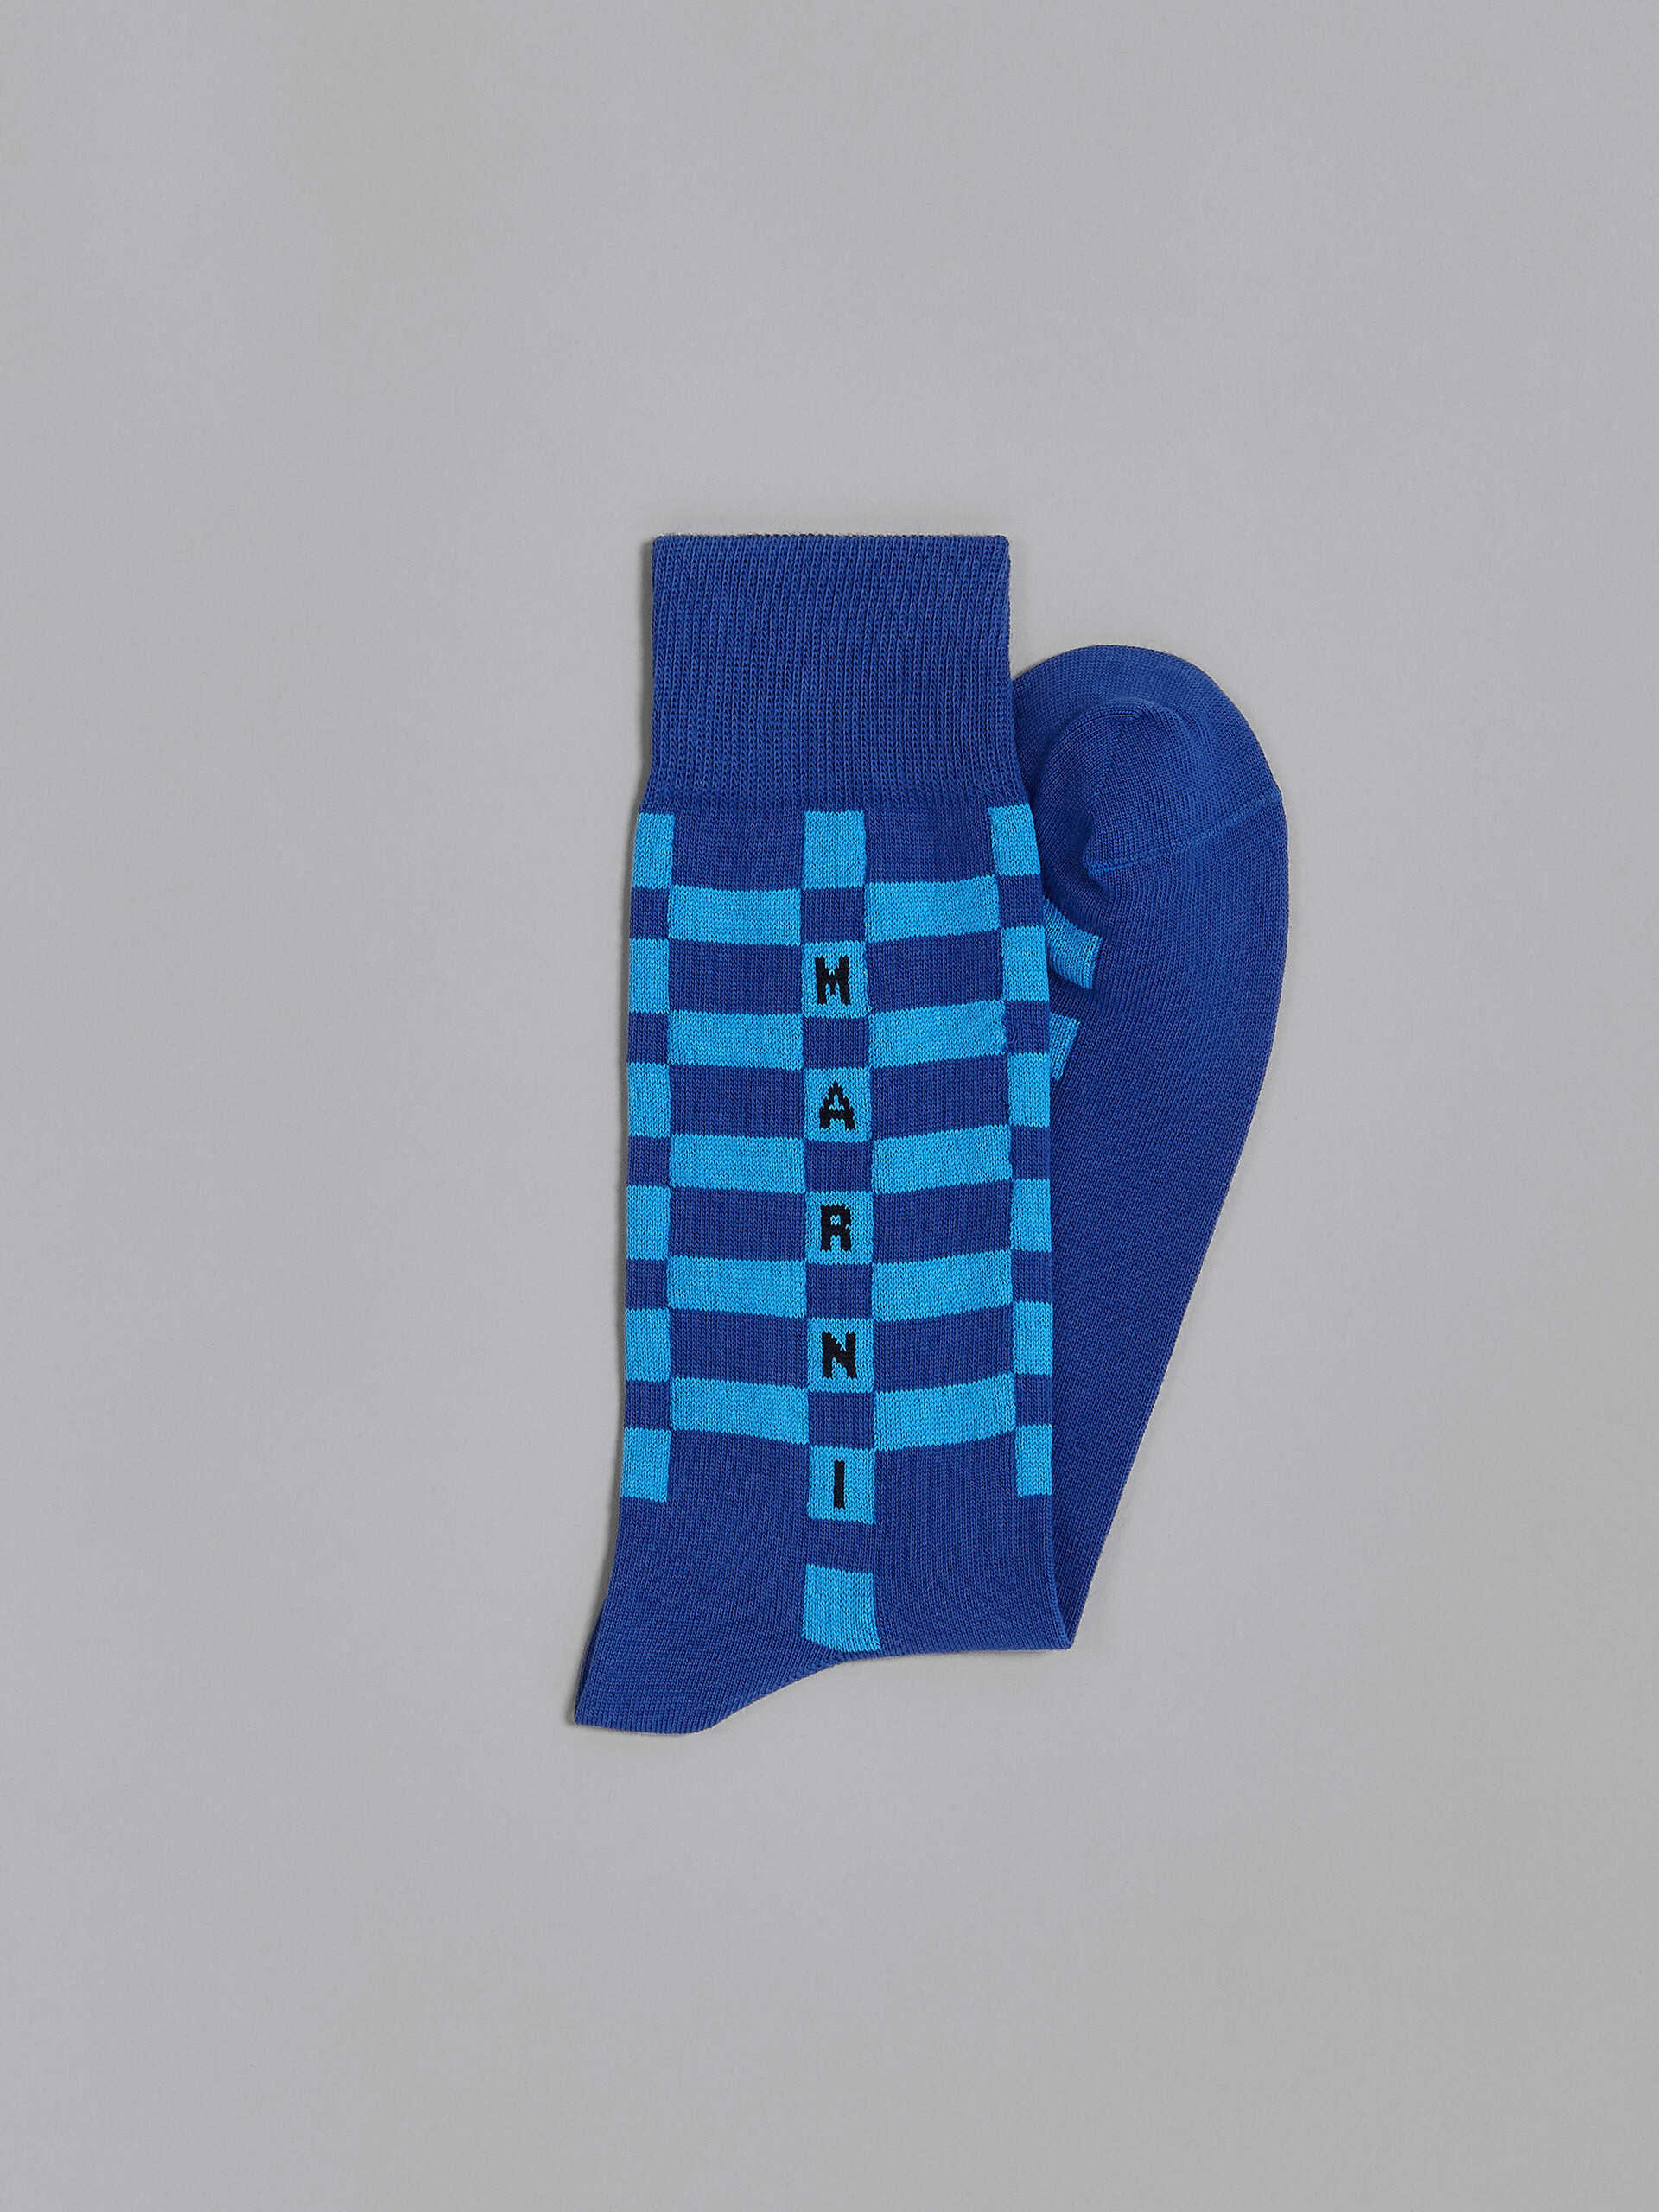 Blaue Socken aus Baumwolle und Nylon - Socken - Image 2